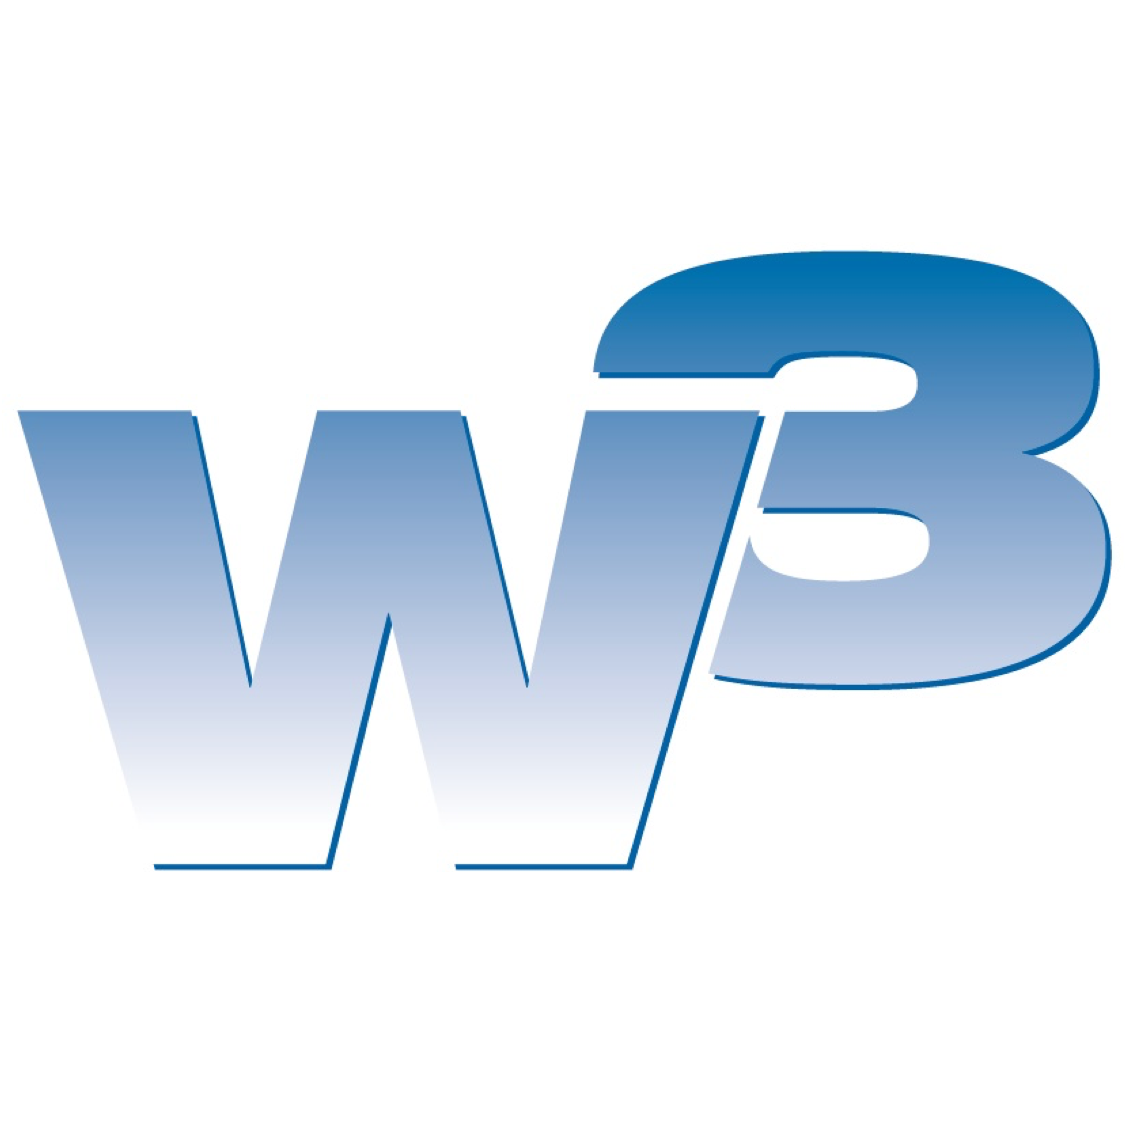 W3 Logo